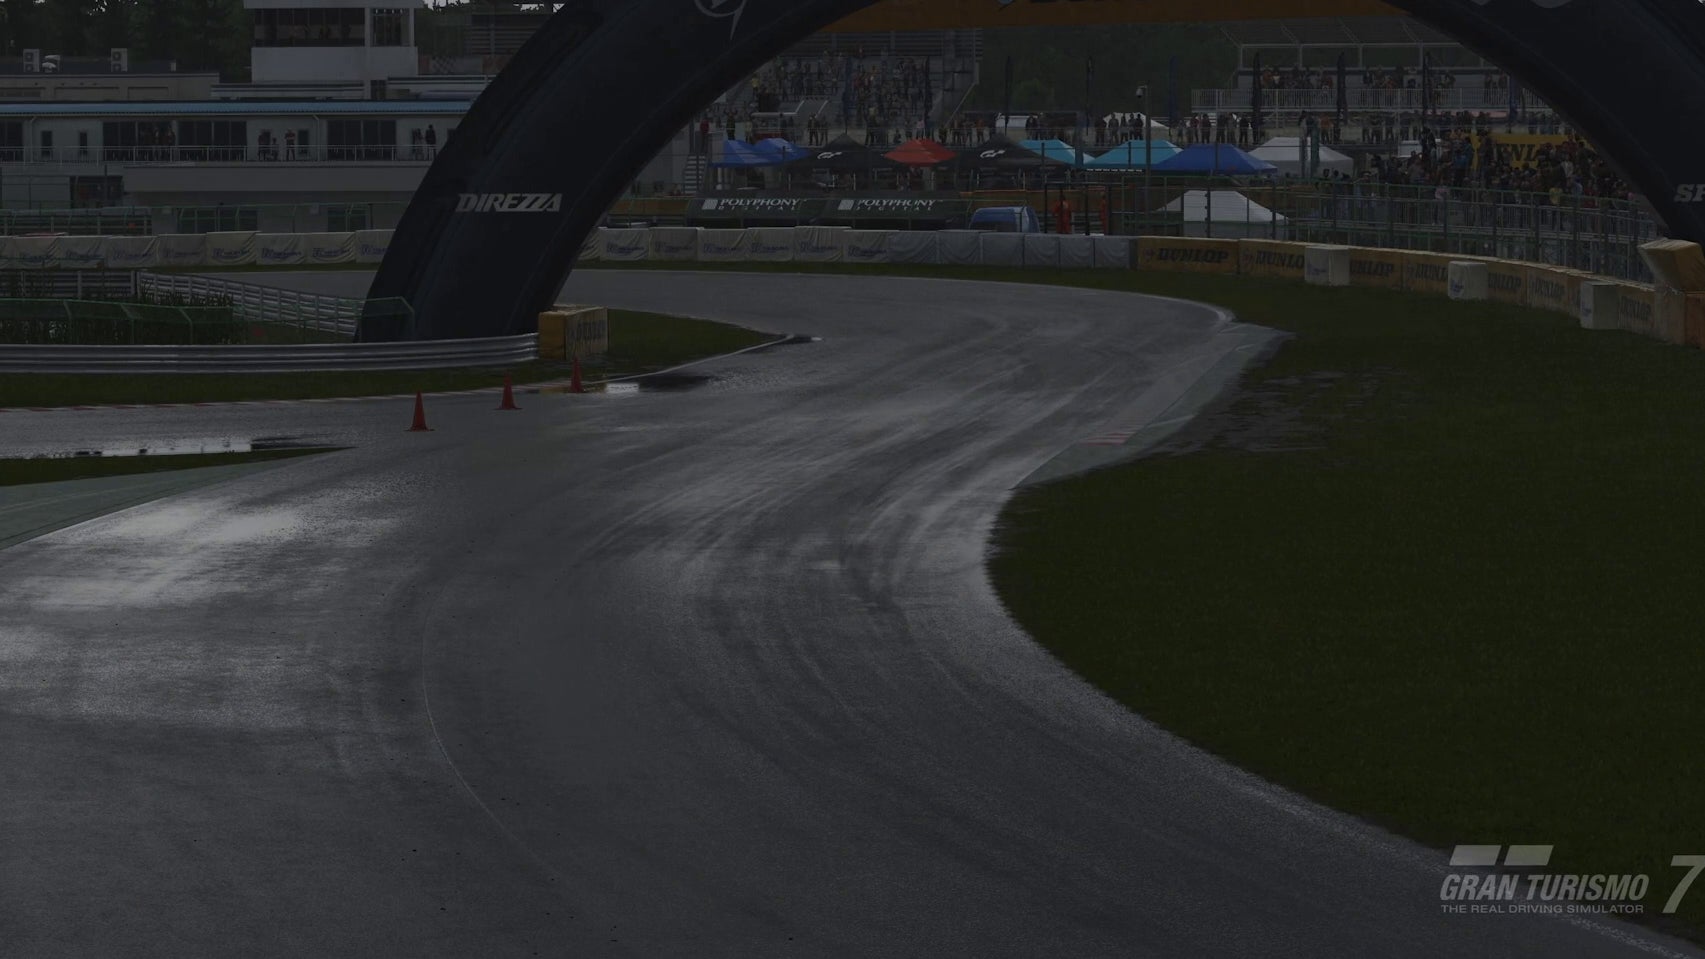 Immagine di Gran Turismo 7 potrebbe avere le migliori corse sul bagnato mai viste in un racing